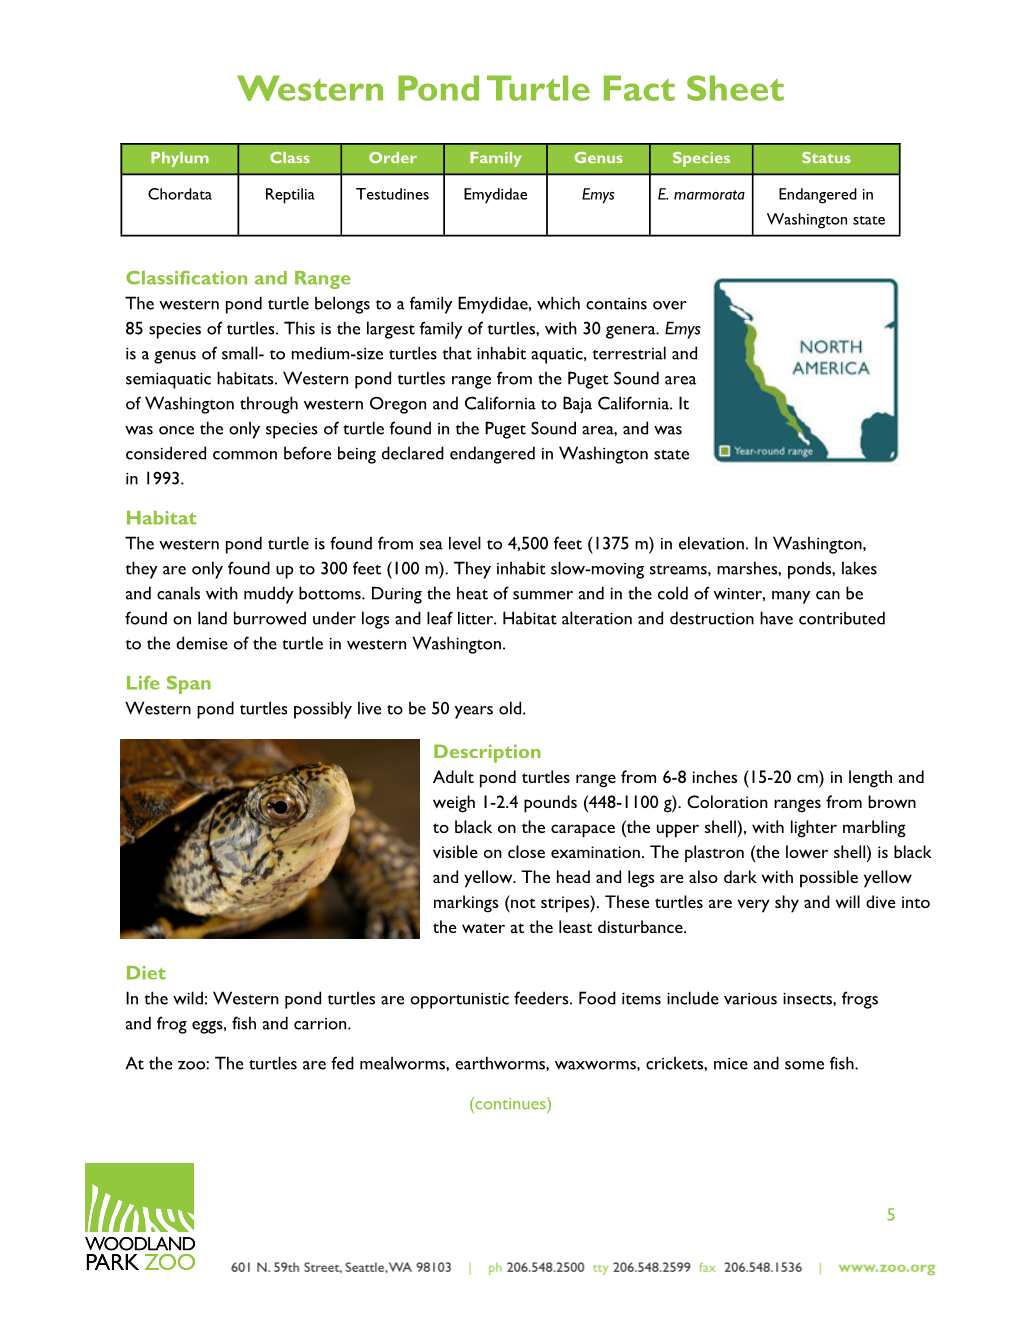 Western Pond Turtle Factsheet